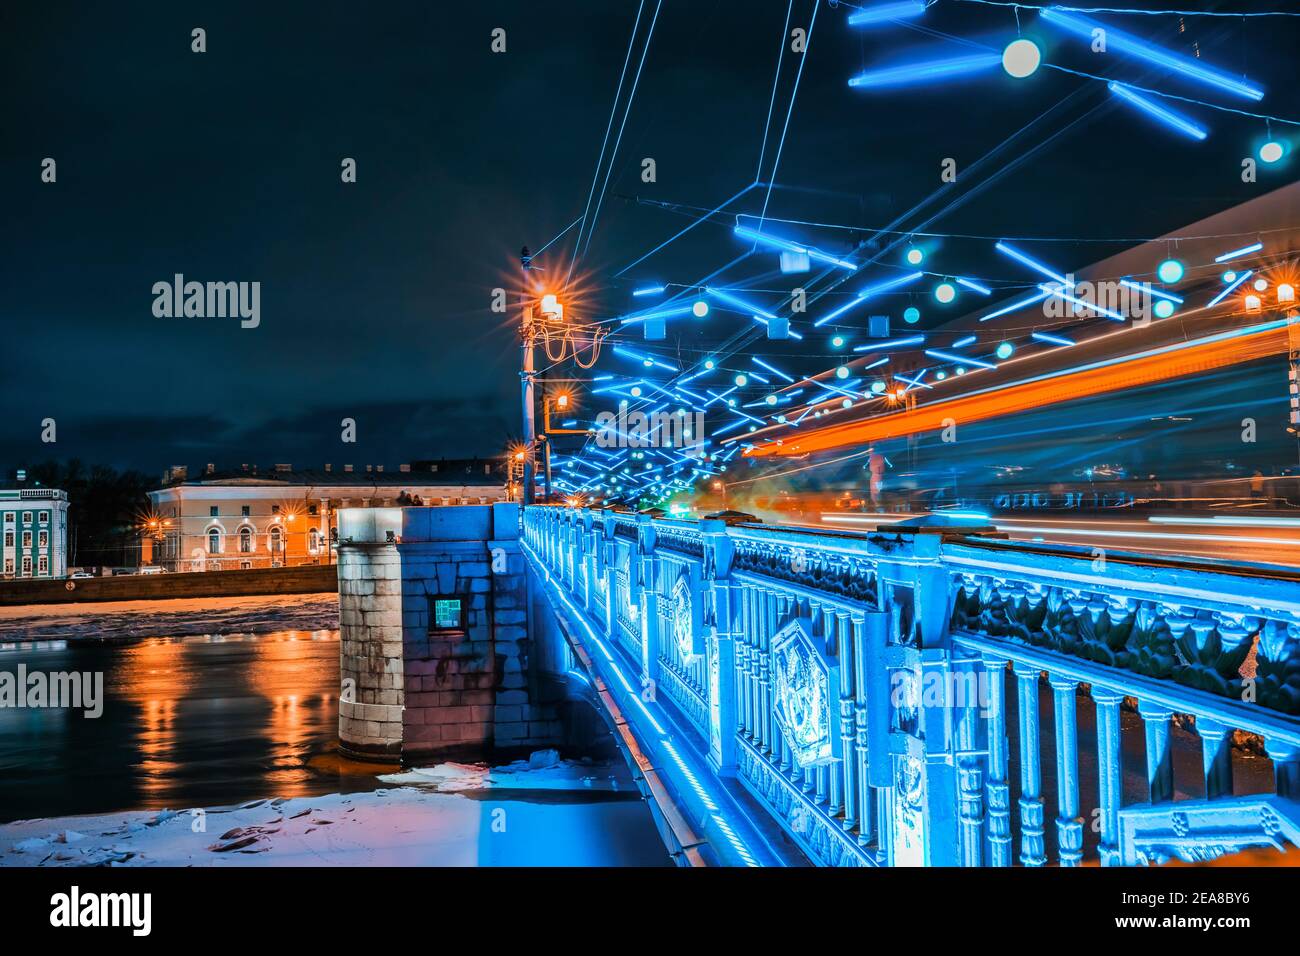 Vue sur le pont du Palais en hiver à Saint-Pétersbourg. Illuminations de vacances en ville. Banque D'Images